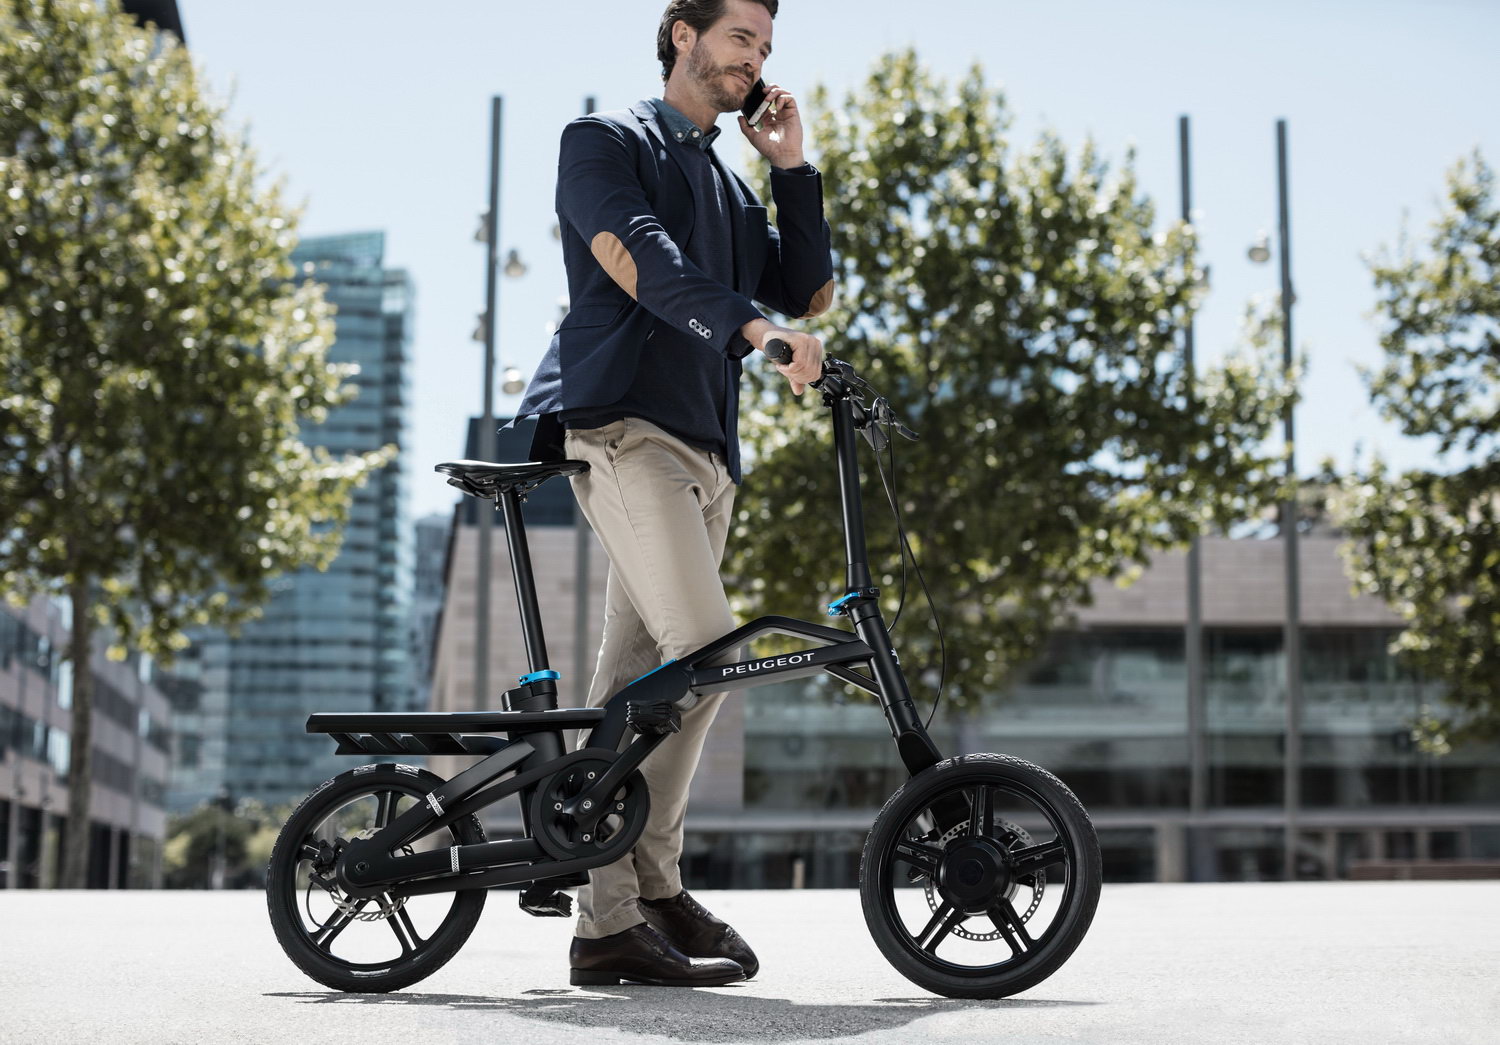 Peugeot dévoile ses nouveaux vélos électriques au design futuriste affirmé !